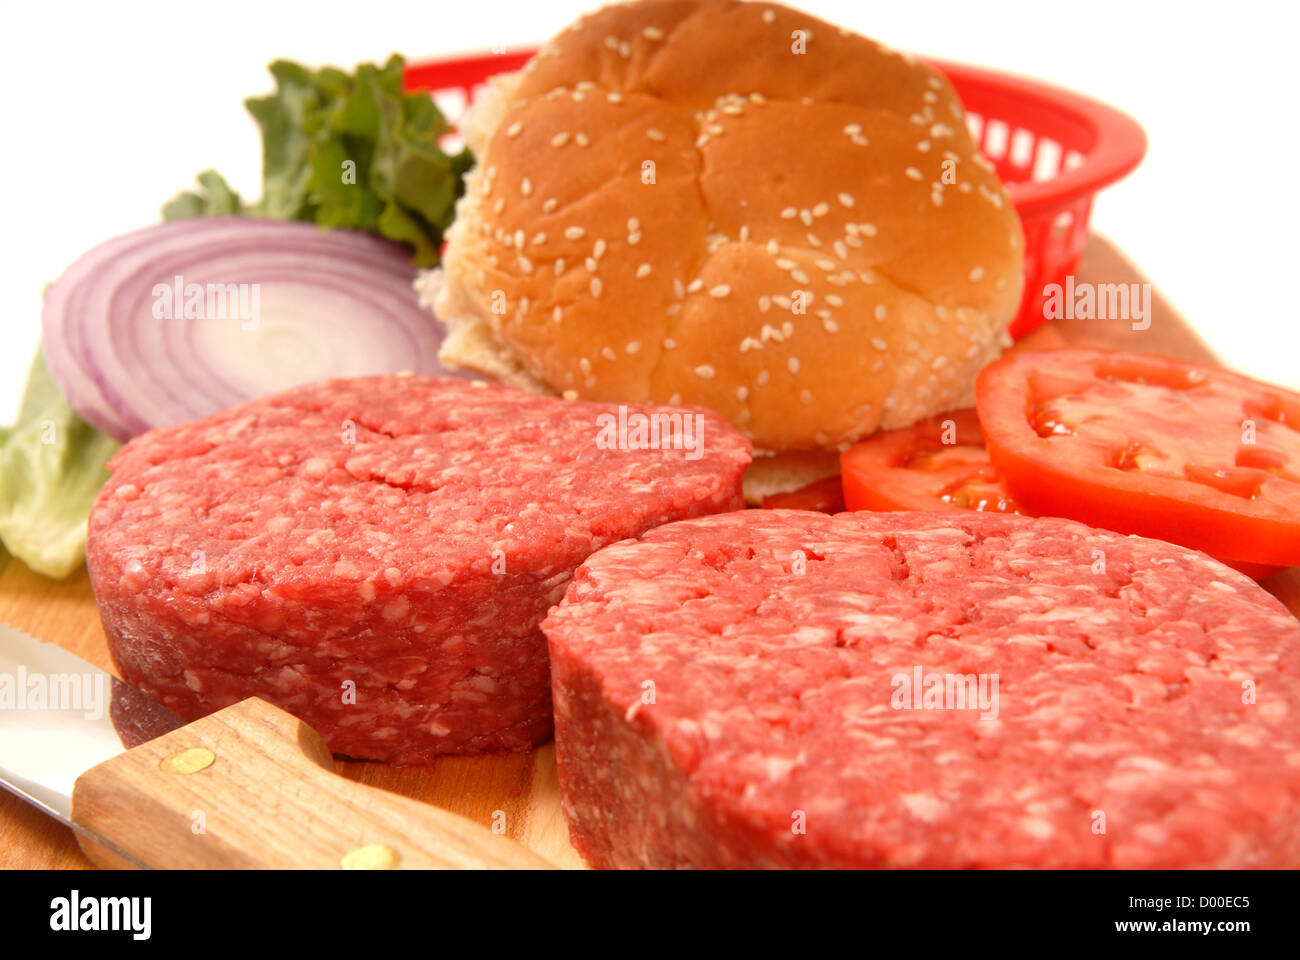 Picknick-Zutaten für Cheeseburger einschließlich Pasteten, Tomaten, Zwiebeln und Salat Stockfoto